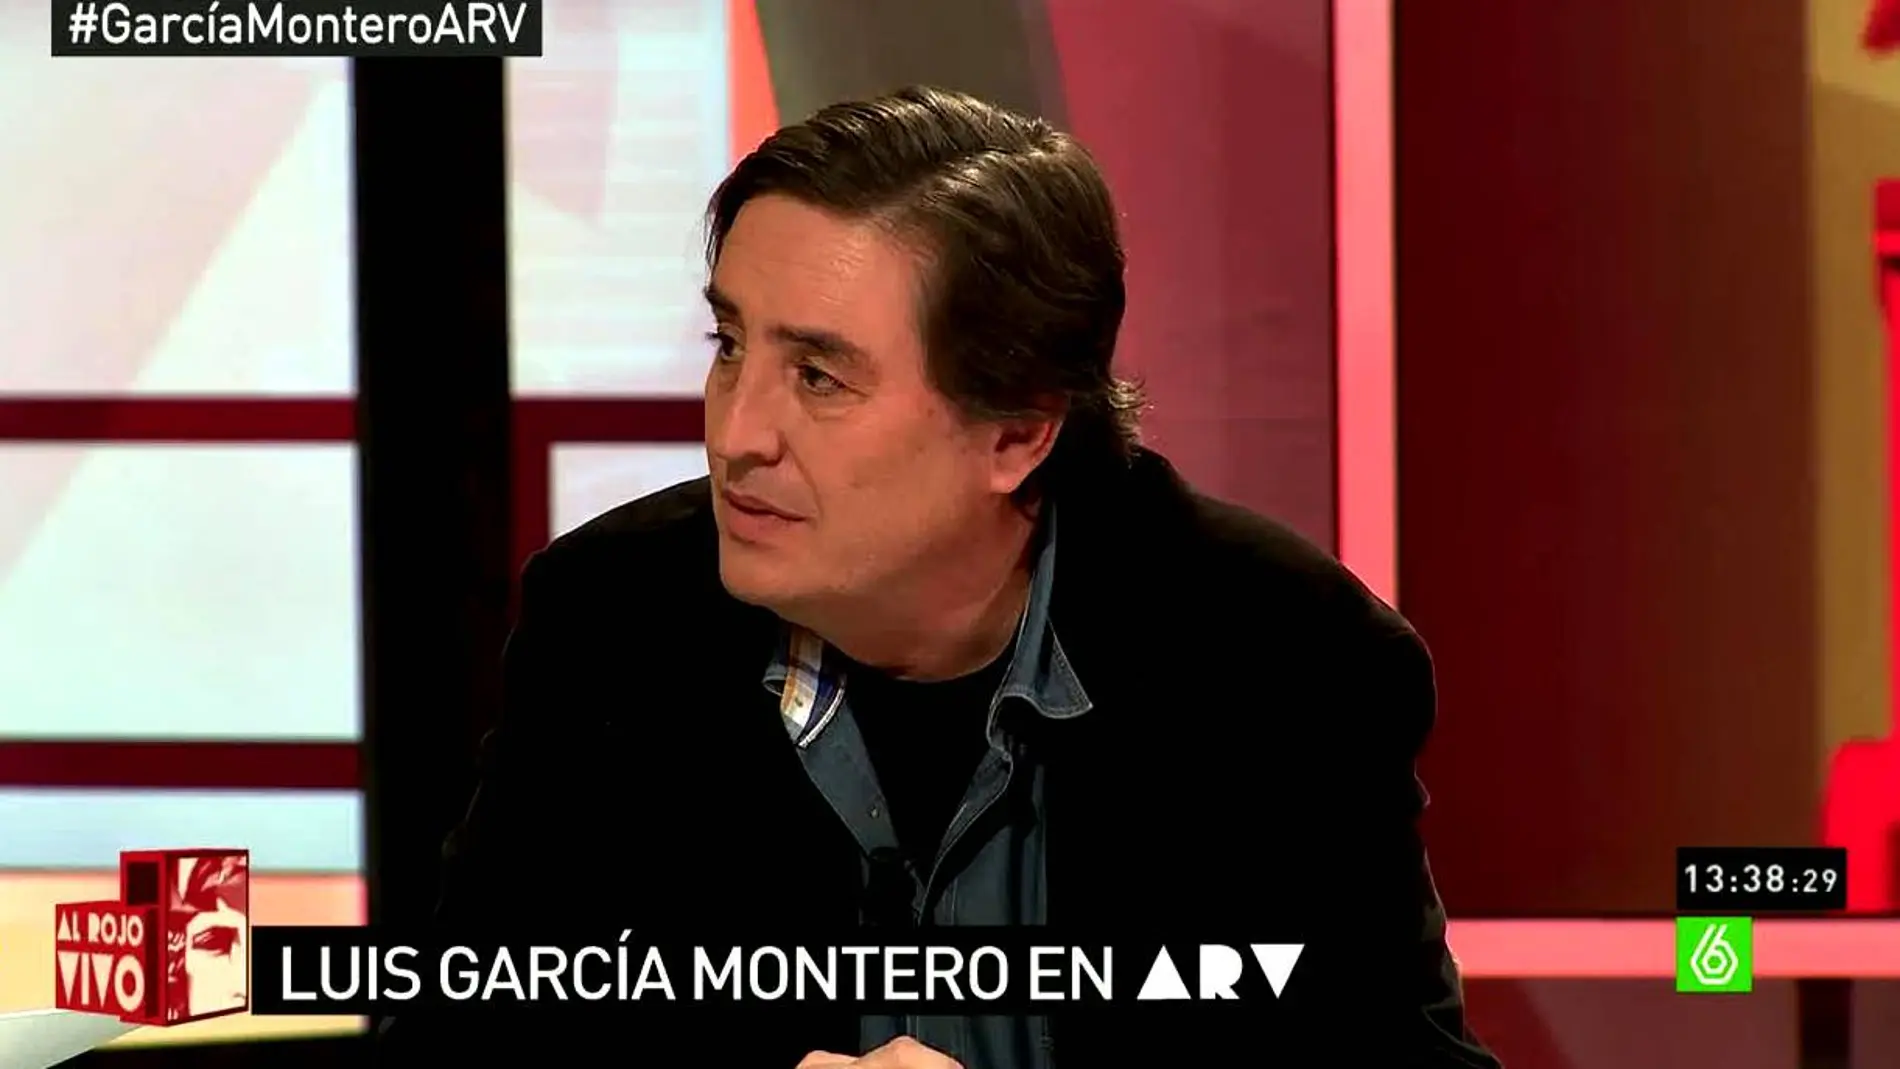 Luis García Montero en ARV